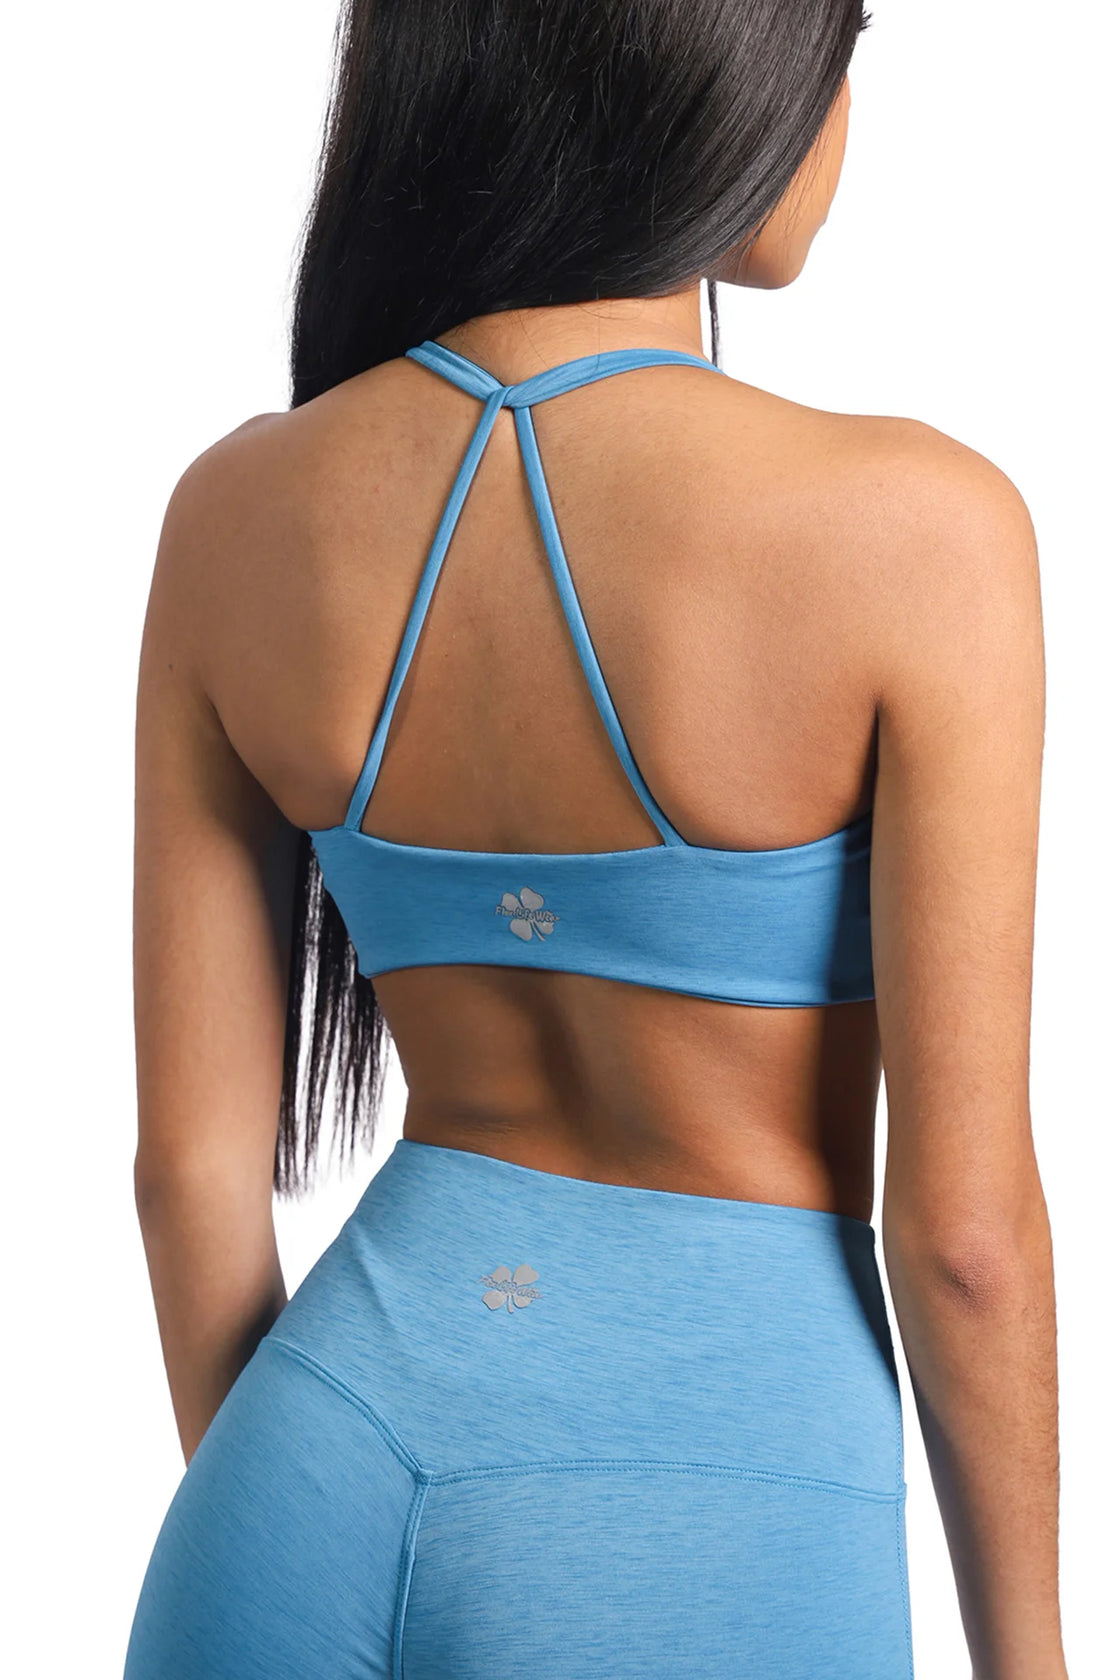 Women open back bra in blue color 